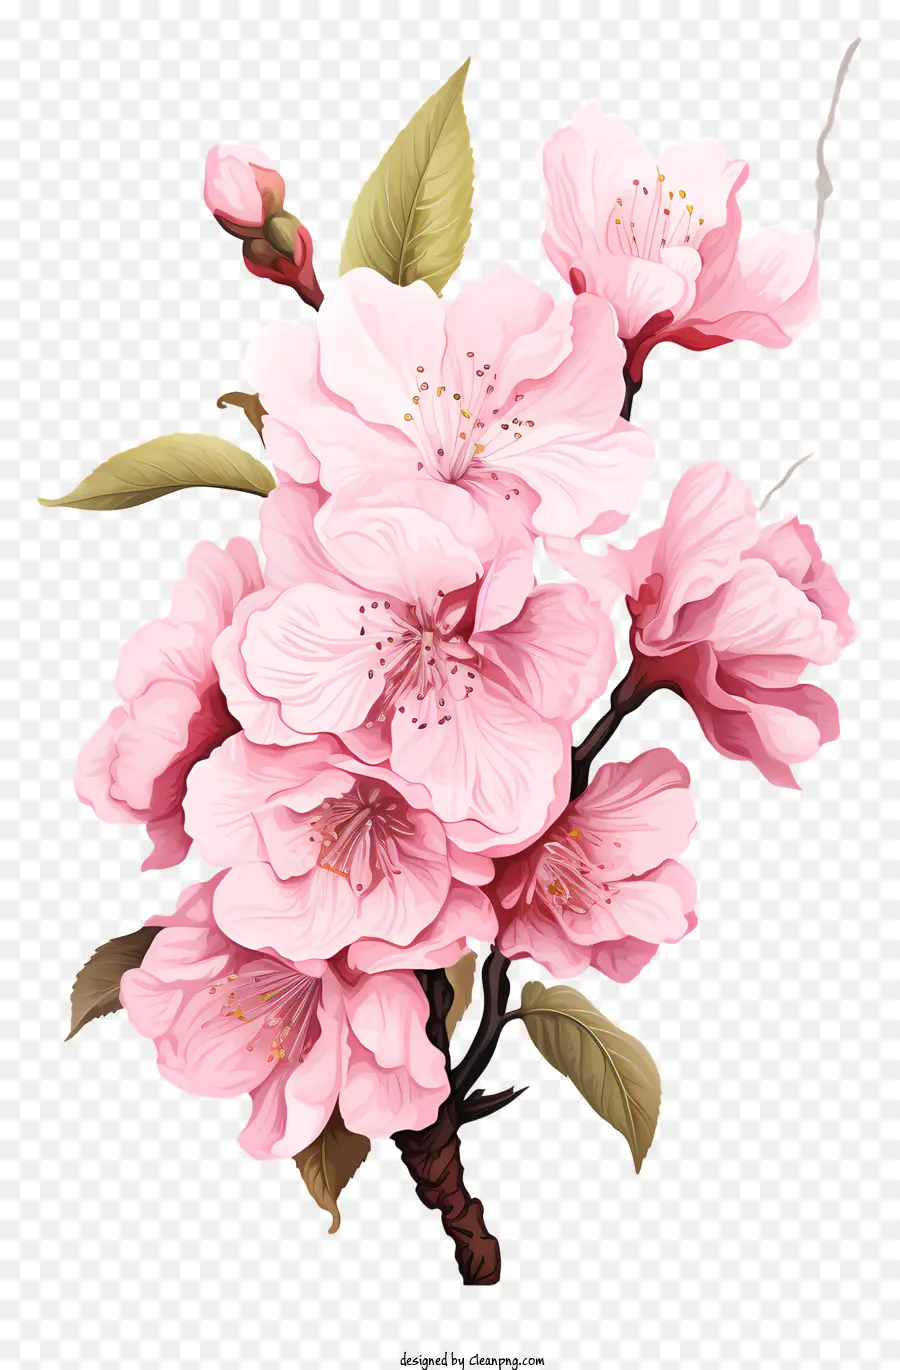 Phong cách thực tế Cherry Bran cành hoa hồng hoa màu hồng - Bóng hoa màu hồng với các kích cỡ và màu sắc khác nhau